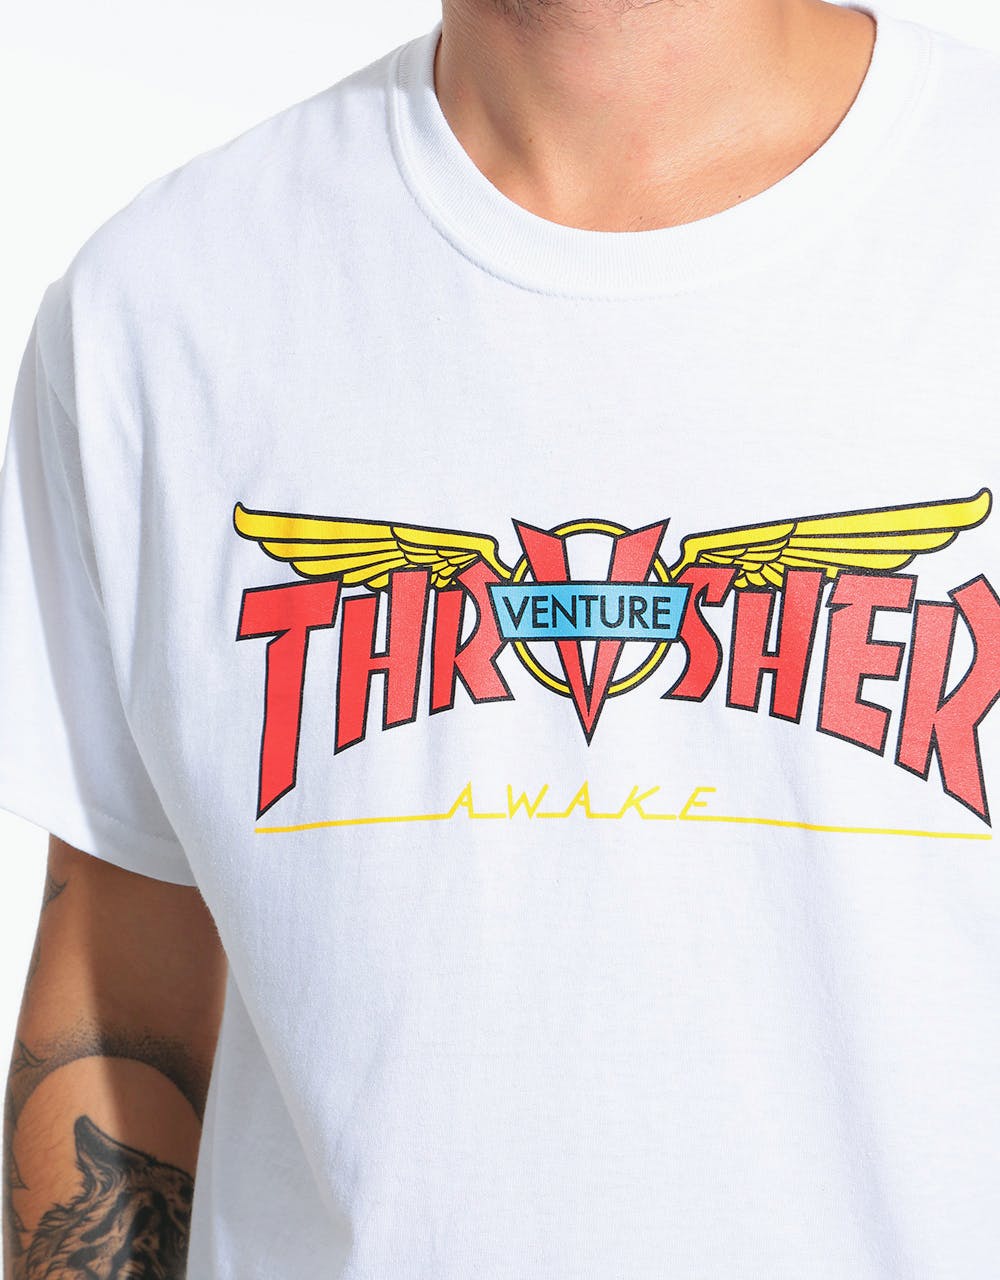 Thrasher x Venture T-Shirt - White